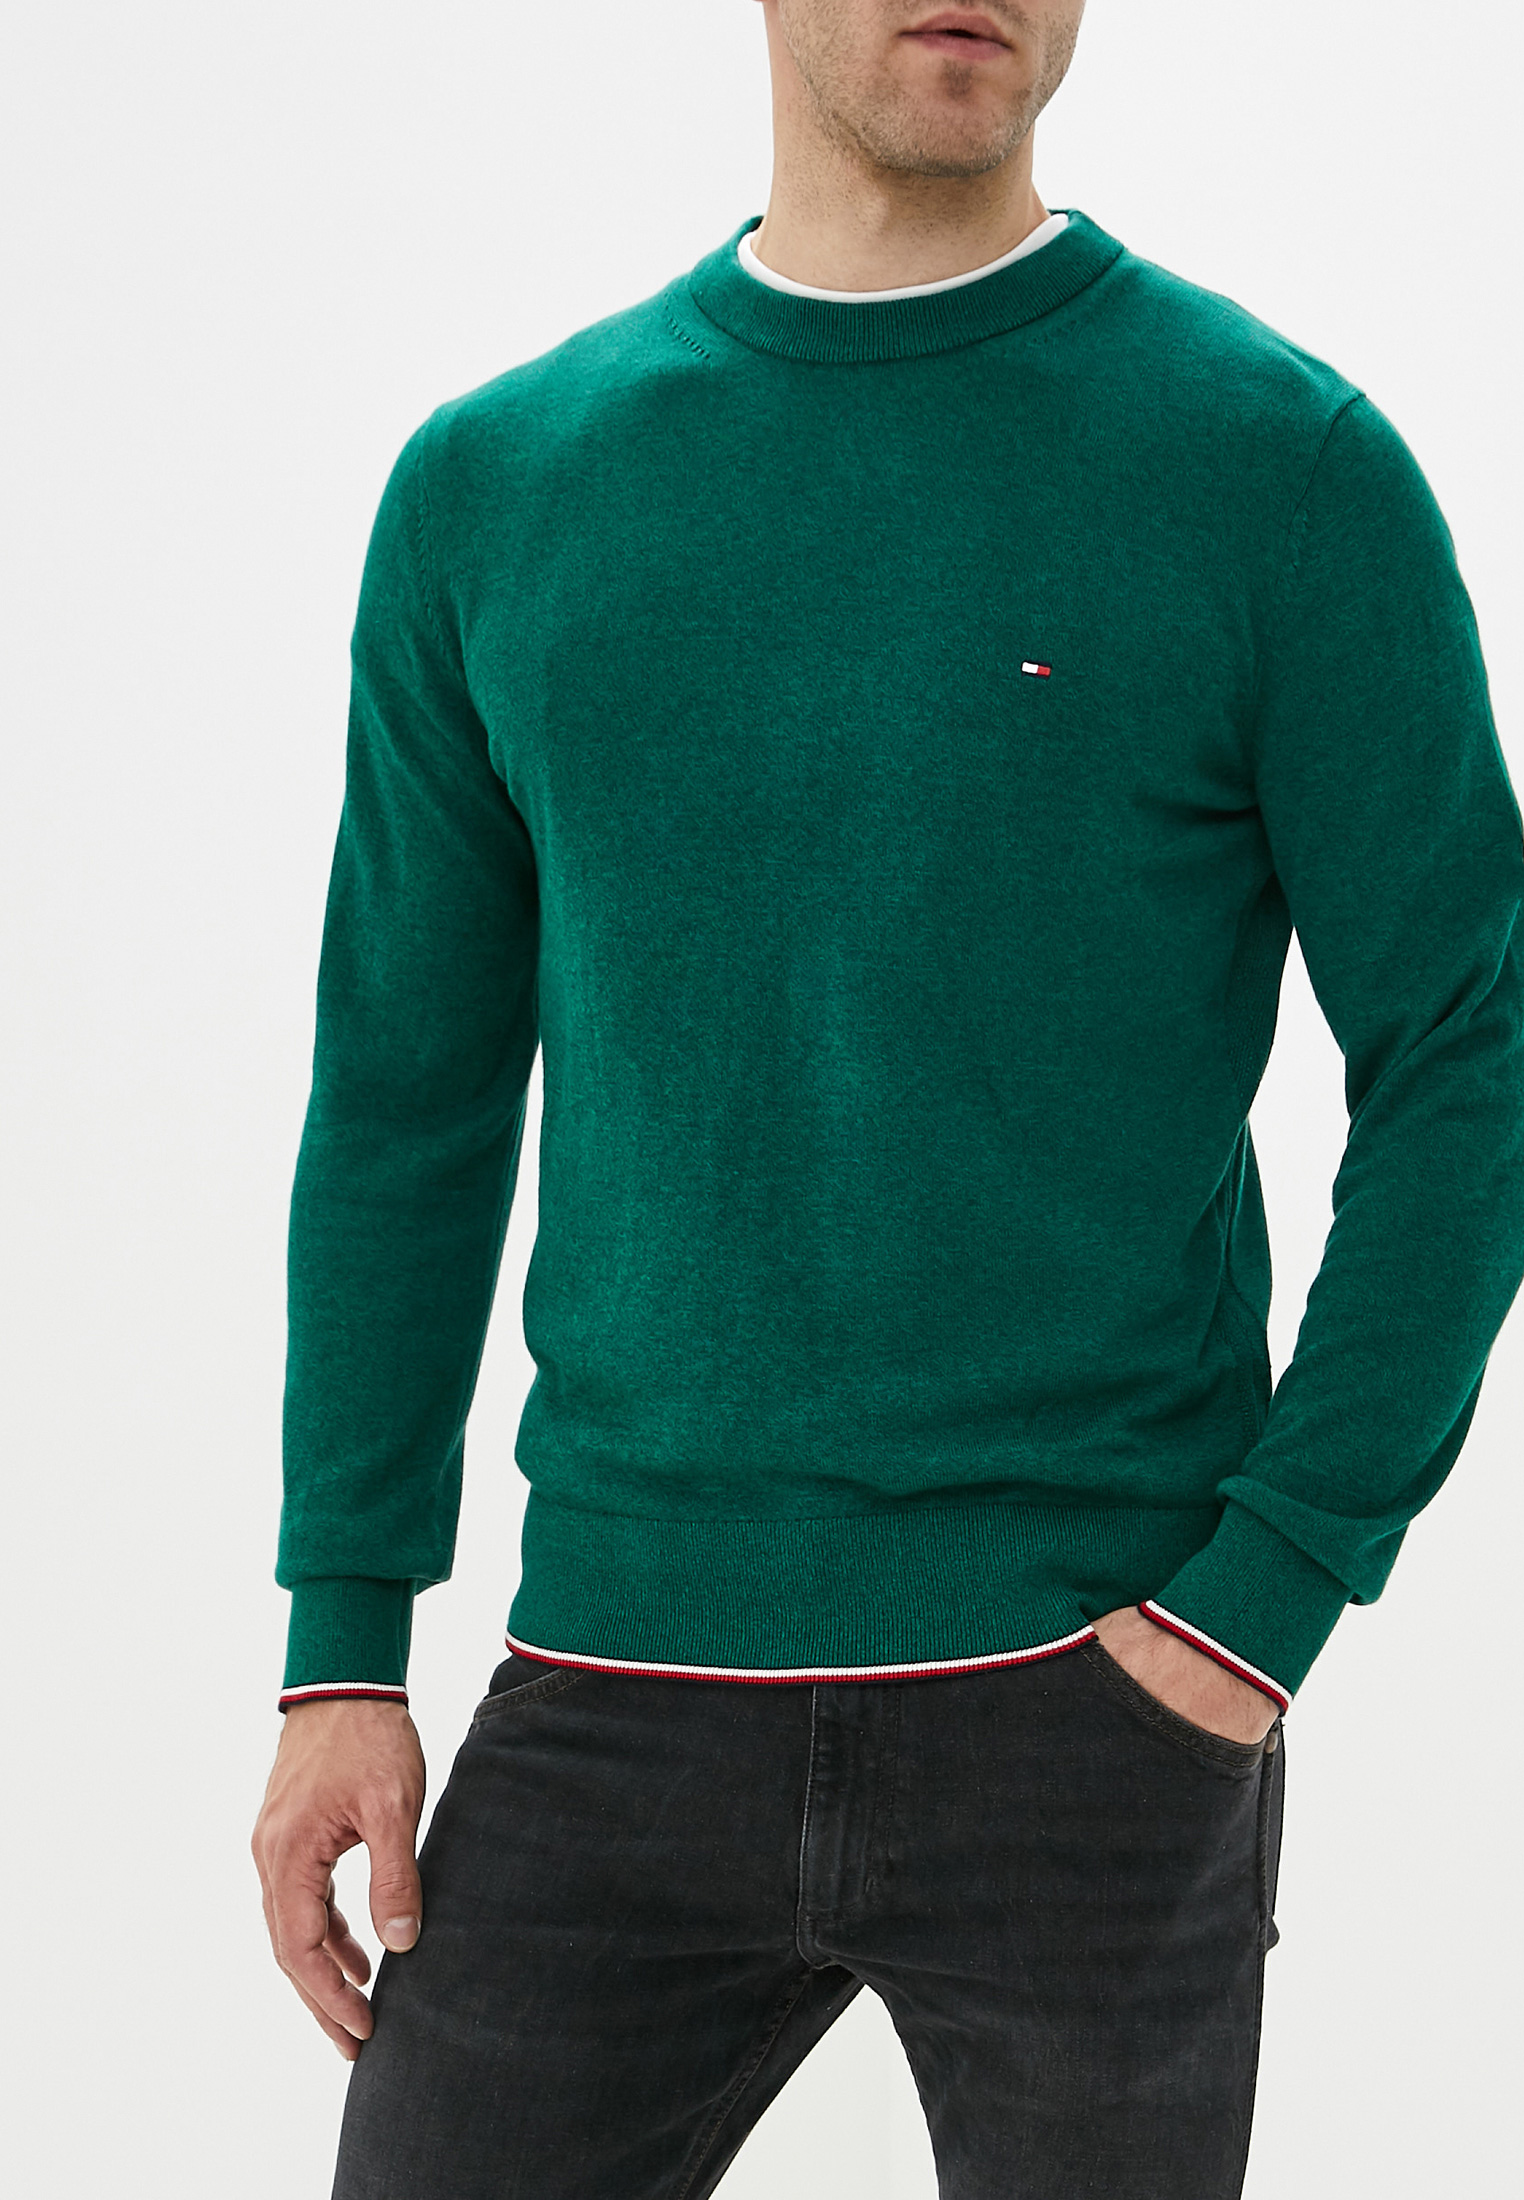 Зеленые свитеры мужские. Водолазка Томми Хилфигер мужская зеленая. Tommy Hilfiger зеленый джемпер. Пуловер Томми Хилфигер зеленый. Томми Хилфигер зеленый свитер.